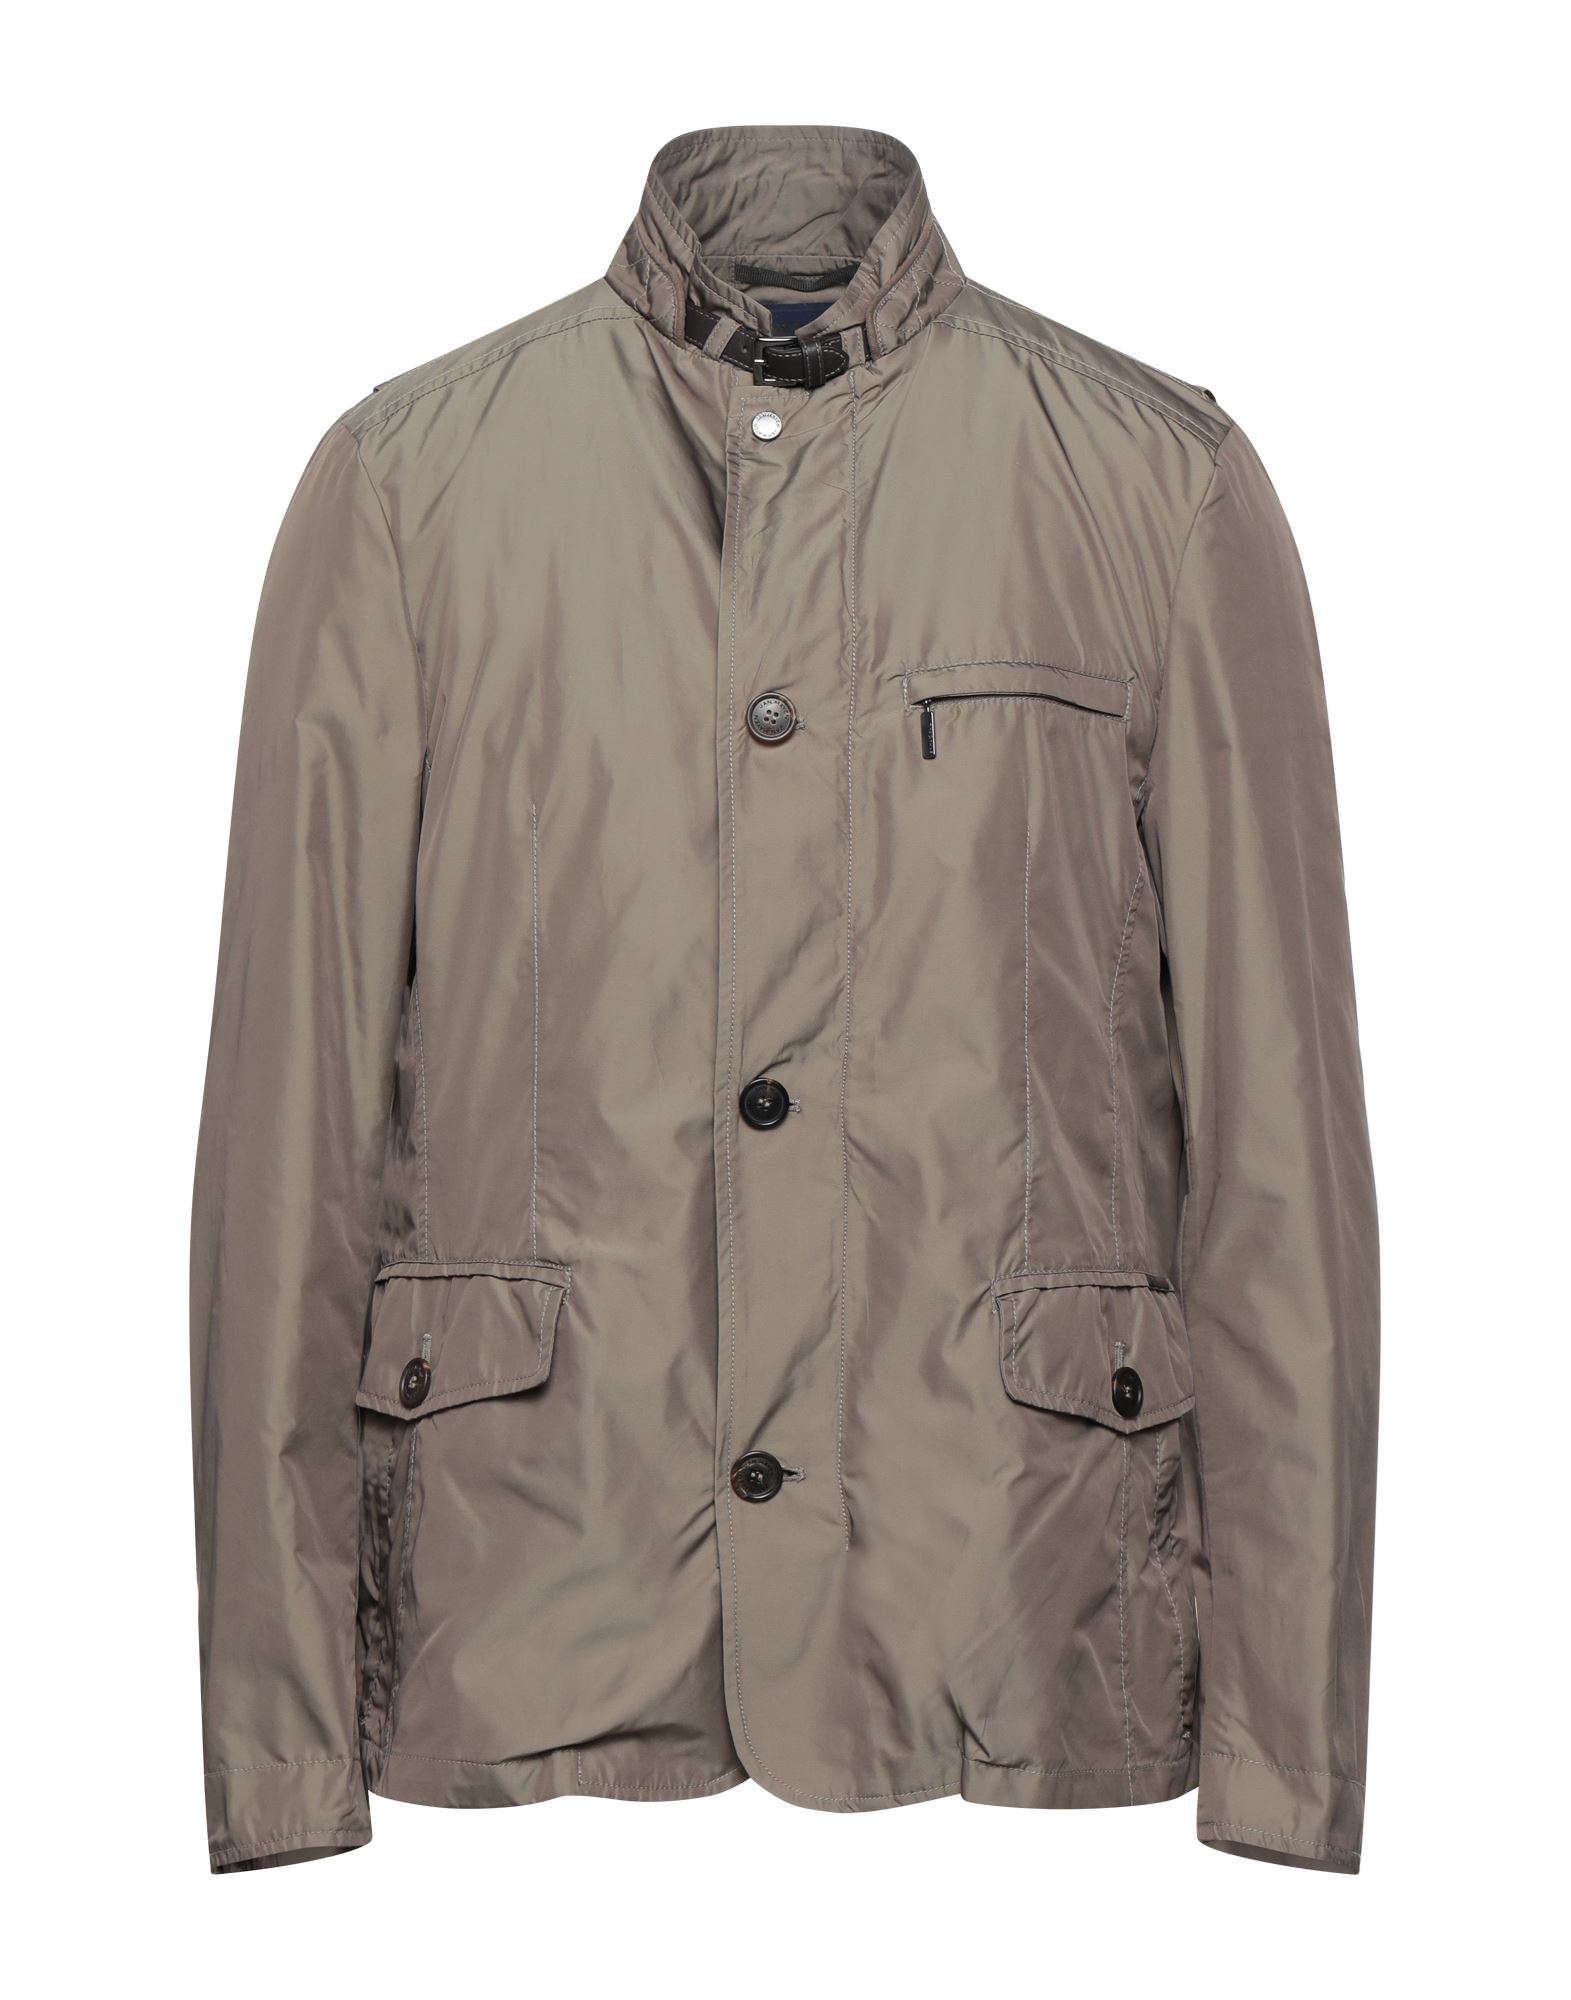 Jan Mayen Jackets In Grey